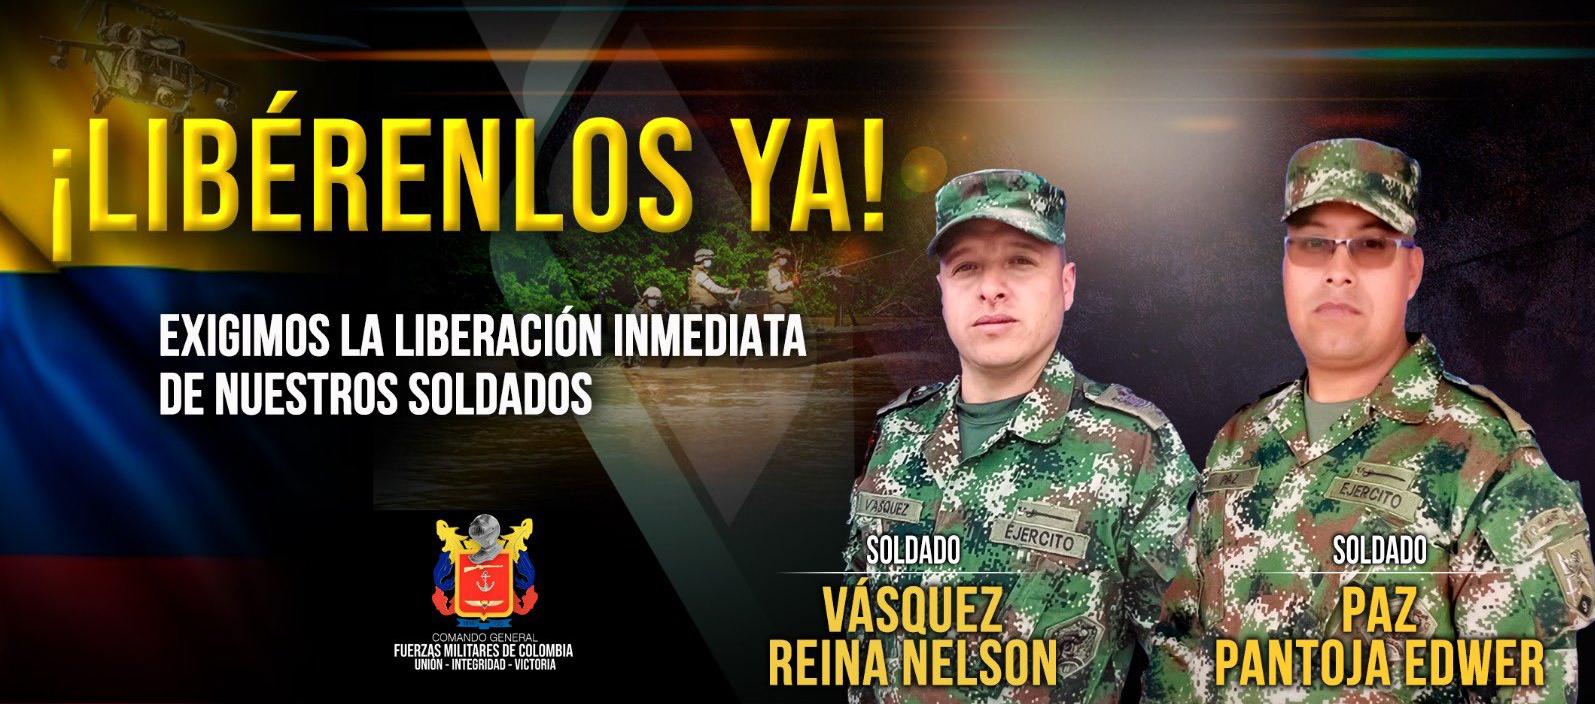 Los soldados Edwer Paz Pantoja y Nelson Vásquez Reina, secuestrados